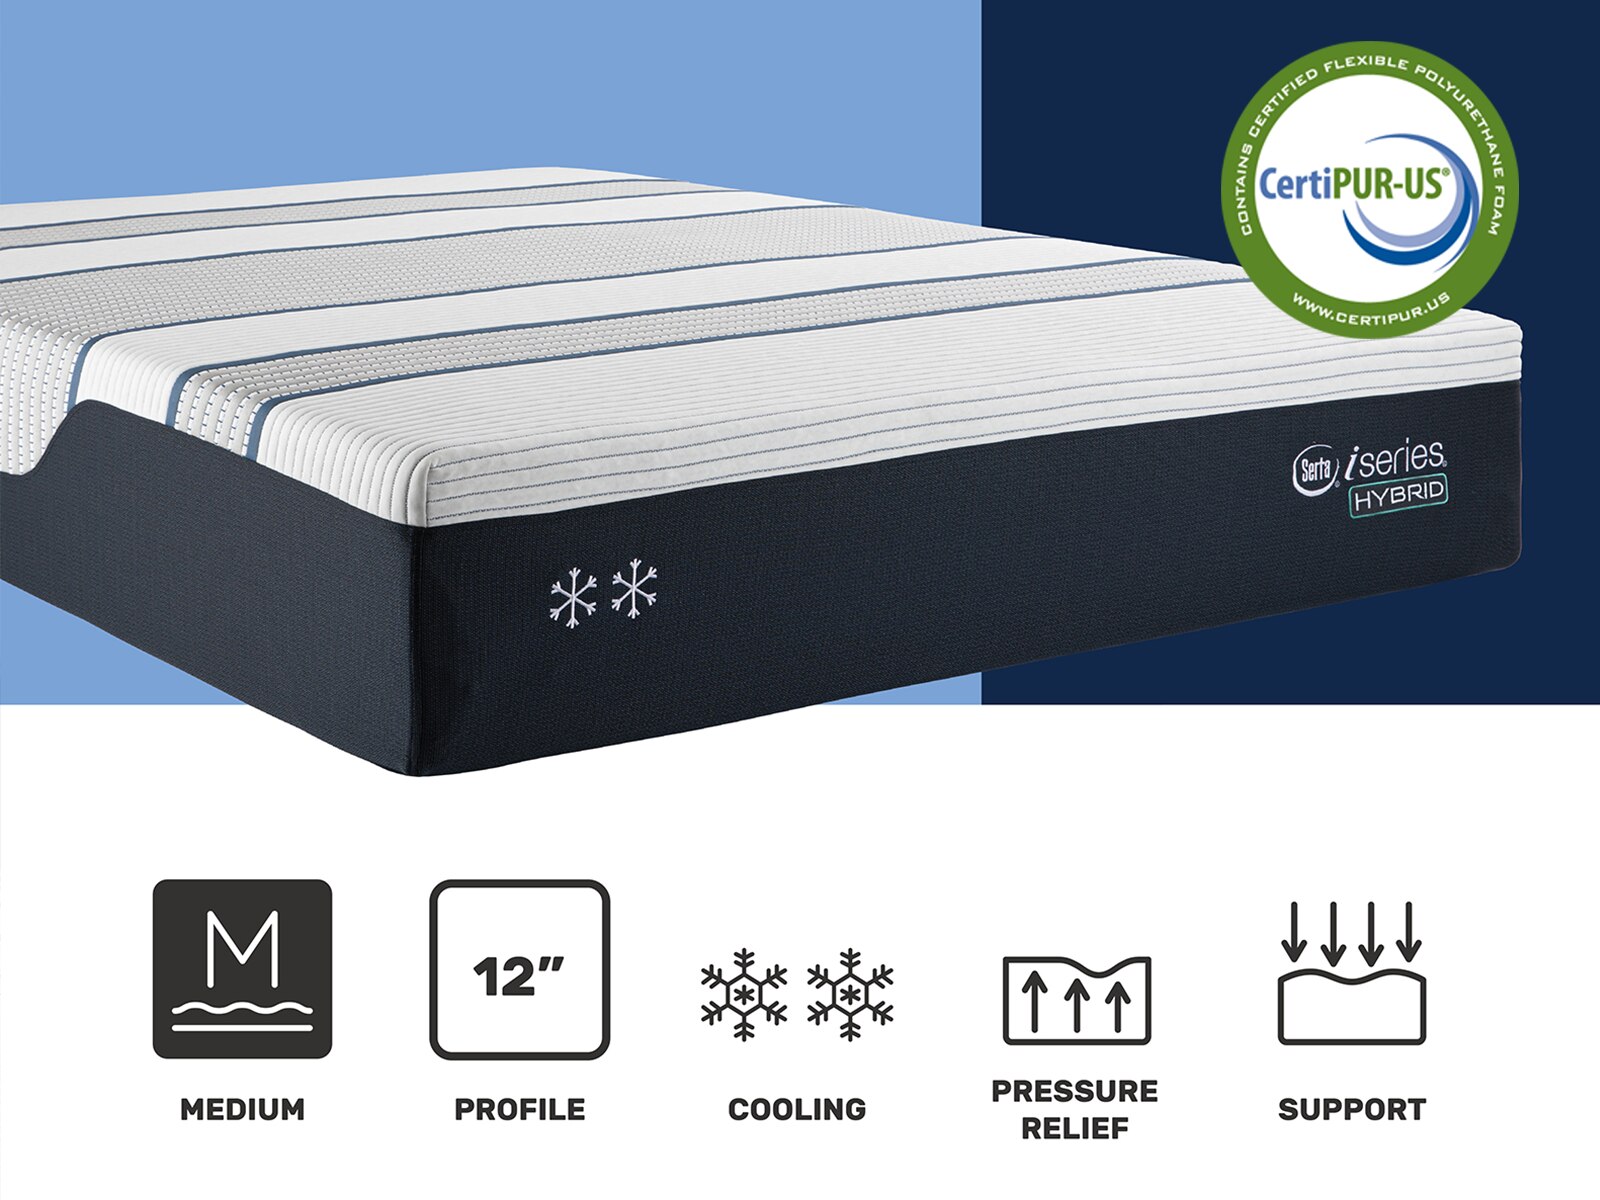 iseries hybrid sleep mattress